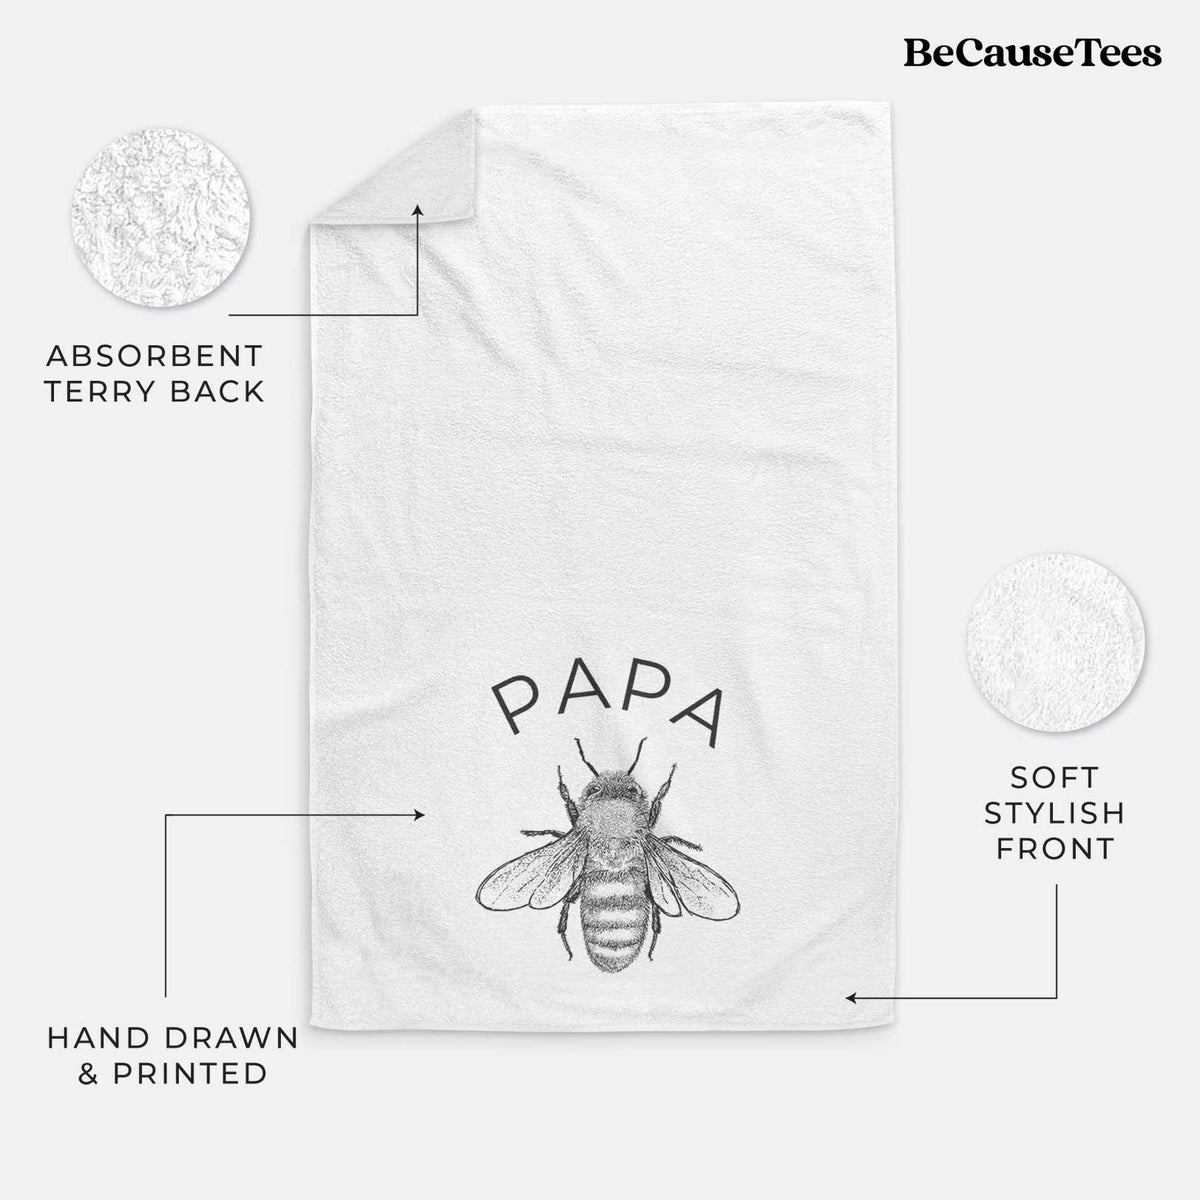 Papa Bee Hand Towel